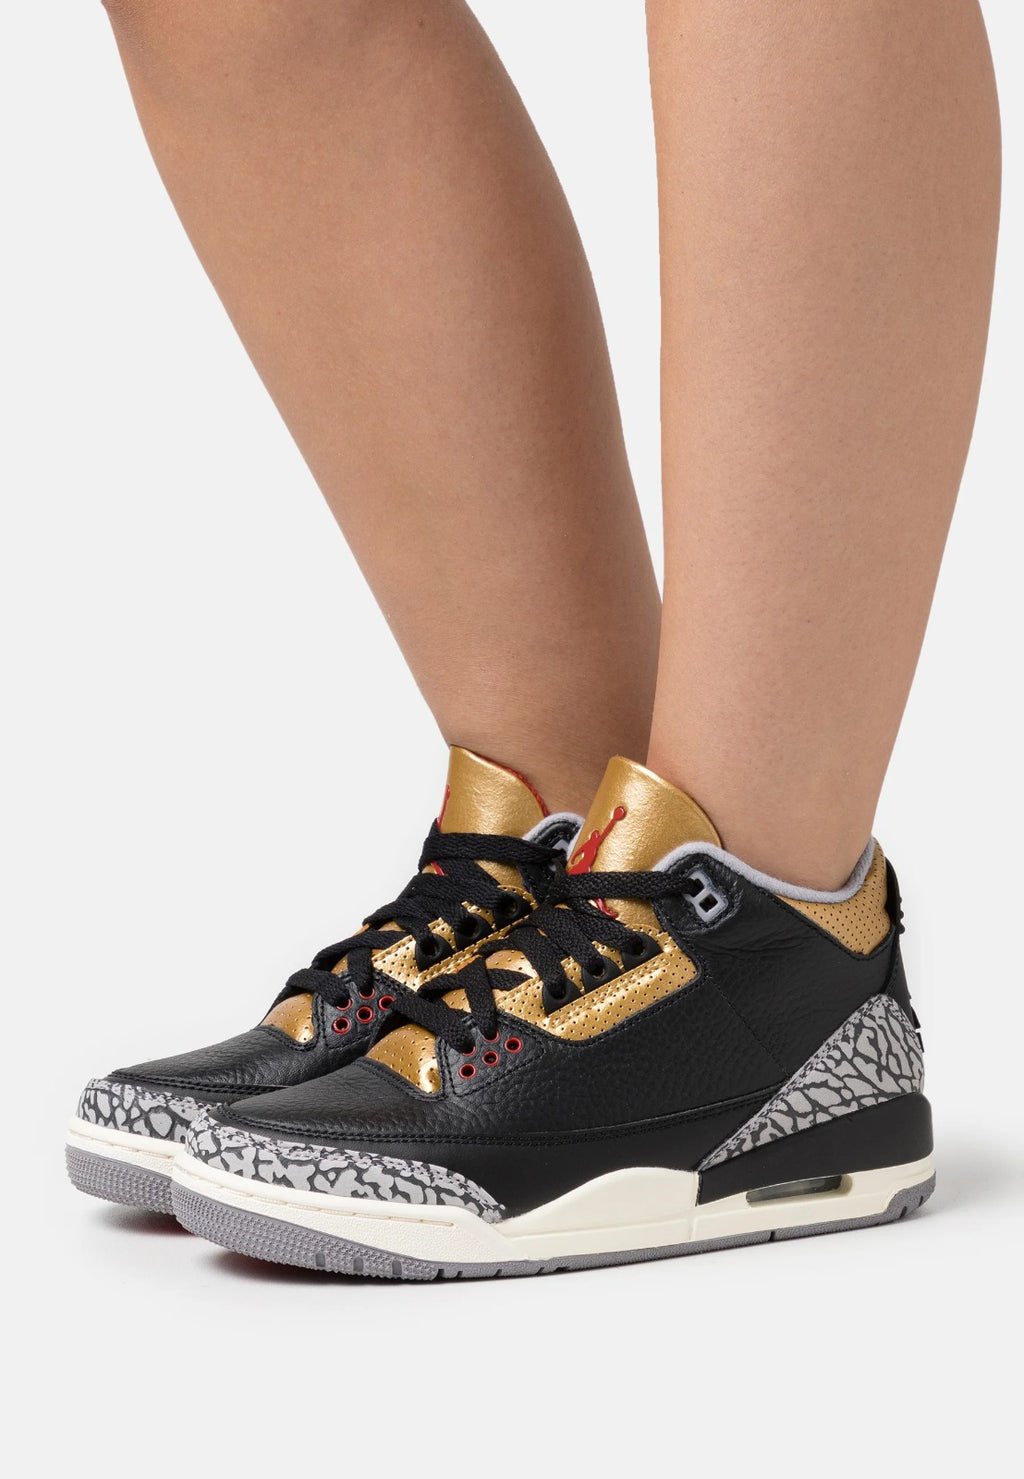 Nike Jordan 3 Nere Oro